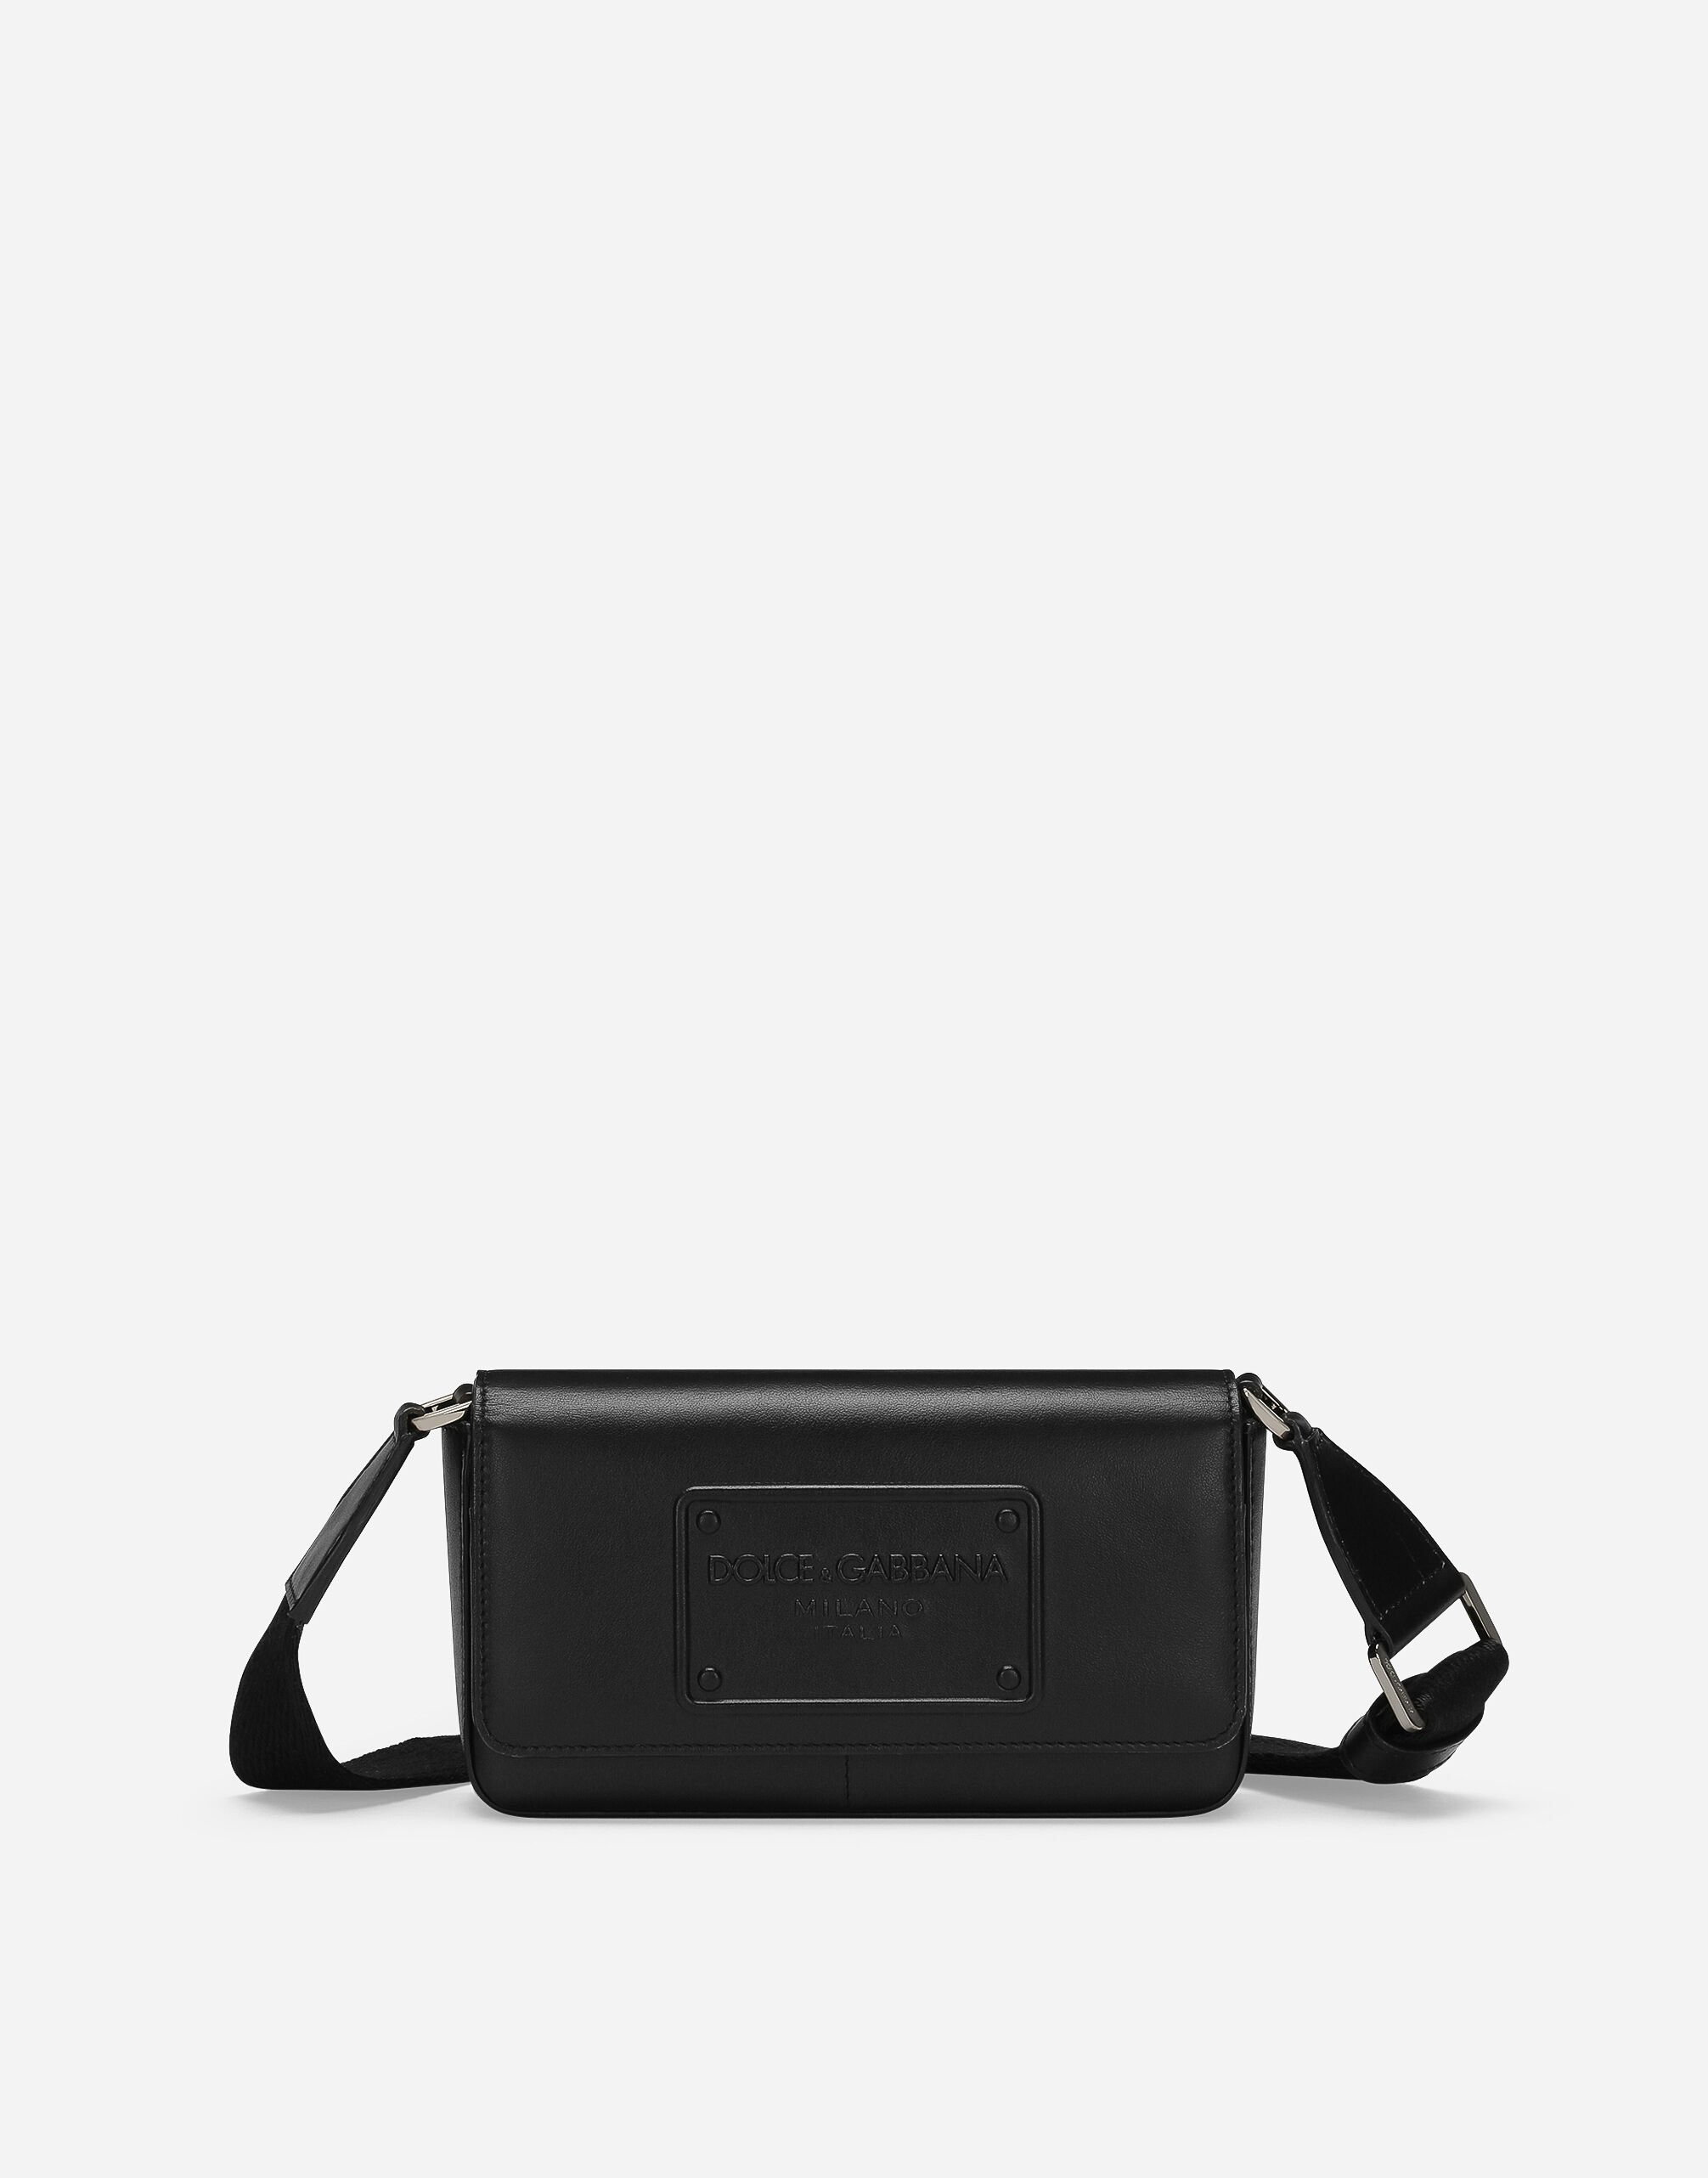 Dolce & Gabbana حقيبة صغيرة من جلد عجل أسود BP0330AW576